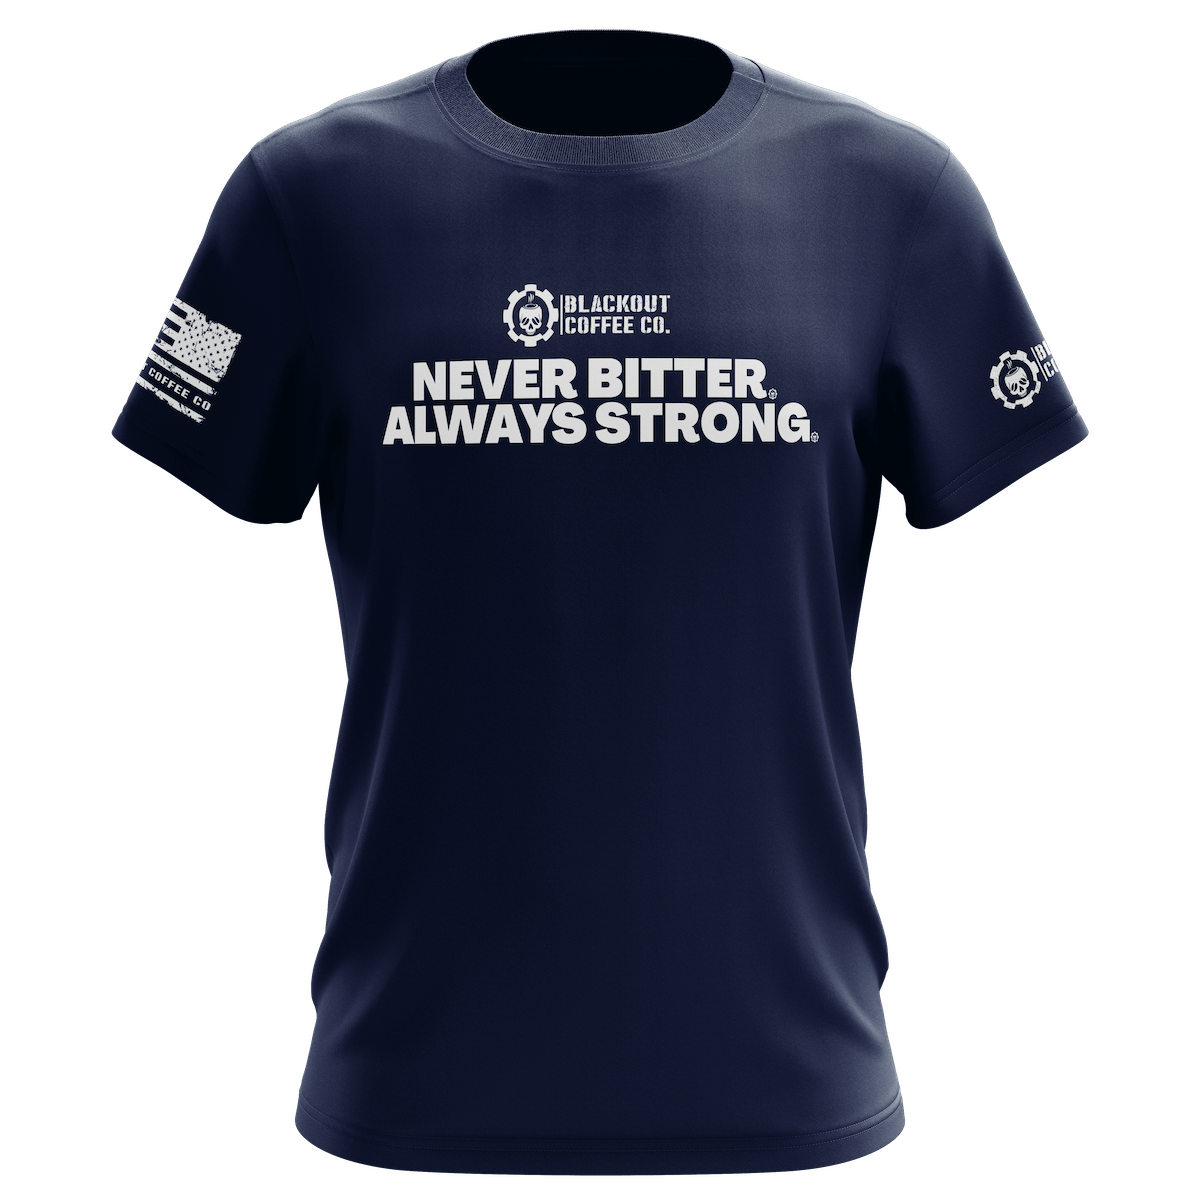 Never Bitter Always Strong Navy Blue T-Shirt